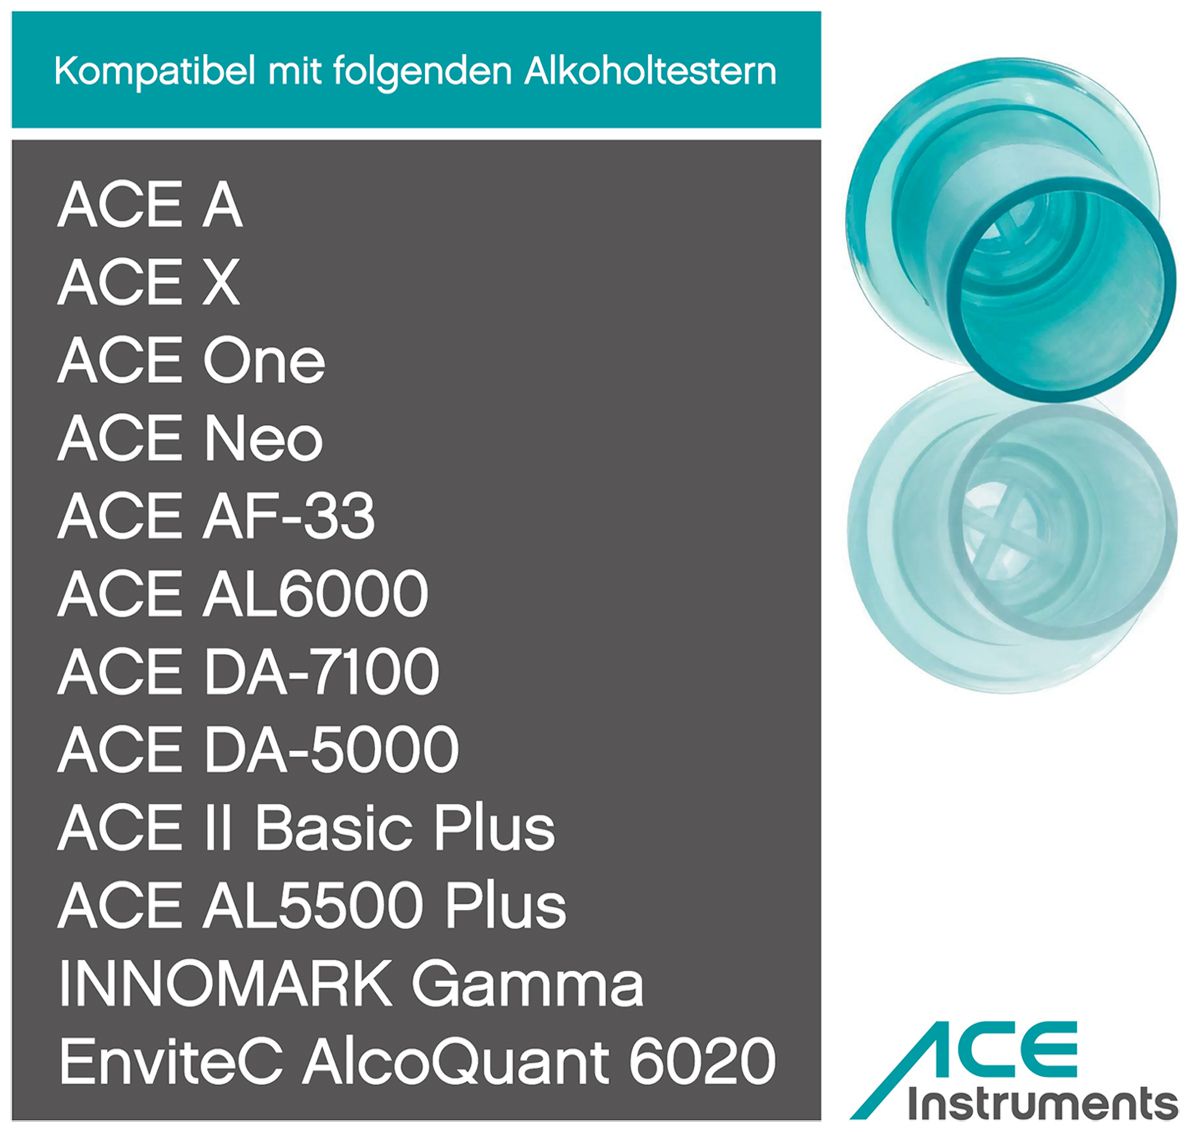 ACE blaue Mundstücke - für ACE AL 5500 Plus, ACE AF-33, ACE One, ACE X uvm. - 25 Stück